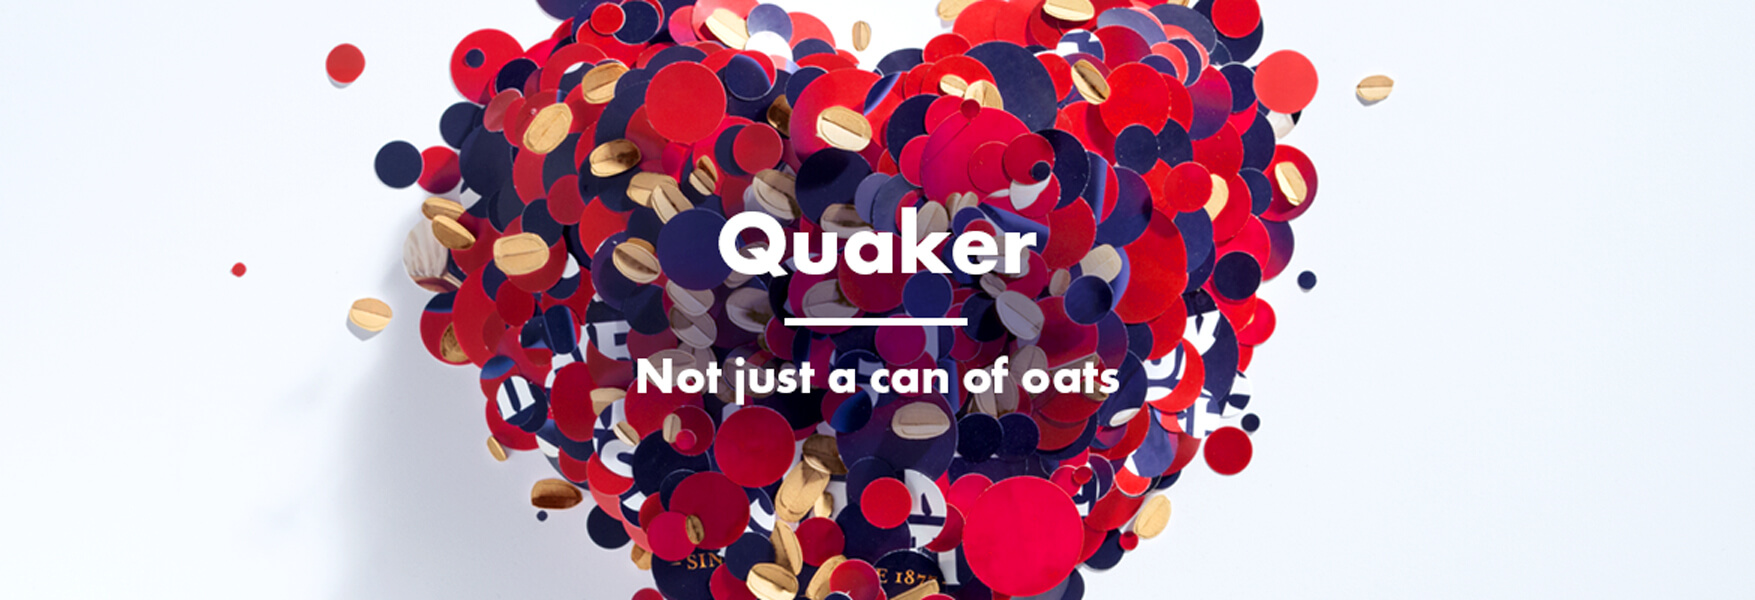 Quaker-thumbnail